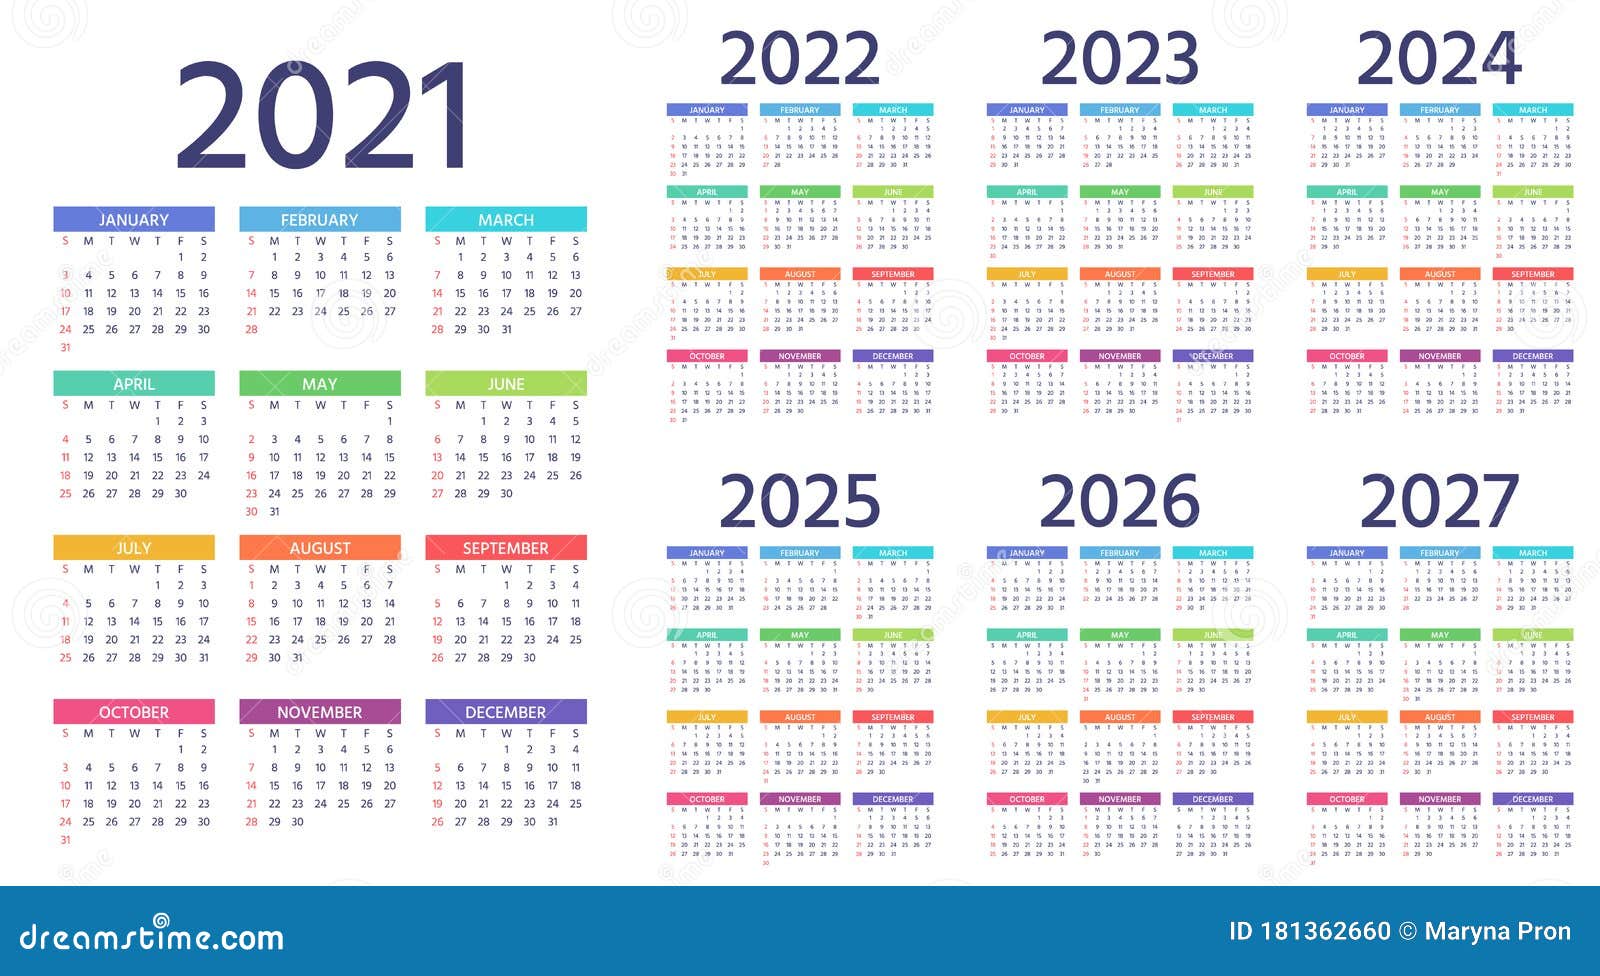 Сколько дней осталось до января 2025. Календарь 2022 2023 2024 2025. Календарь 2021-2022. Календарь 2021-2025. Календарь 2022-2023 год.